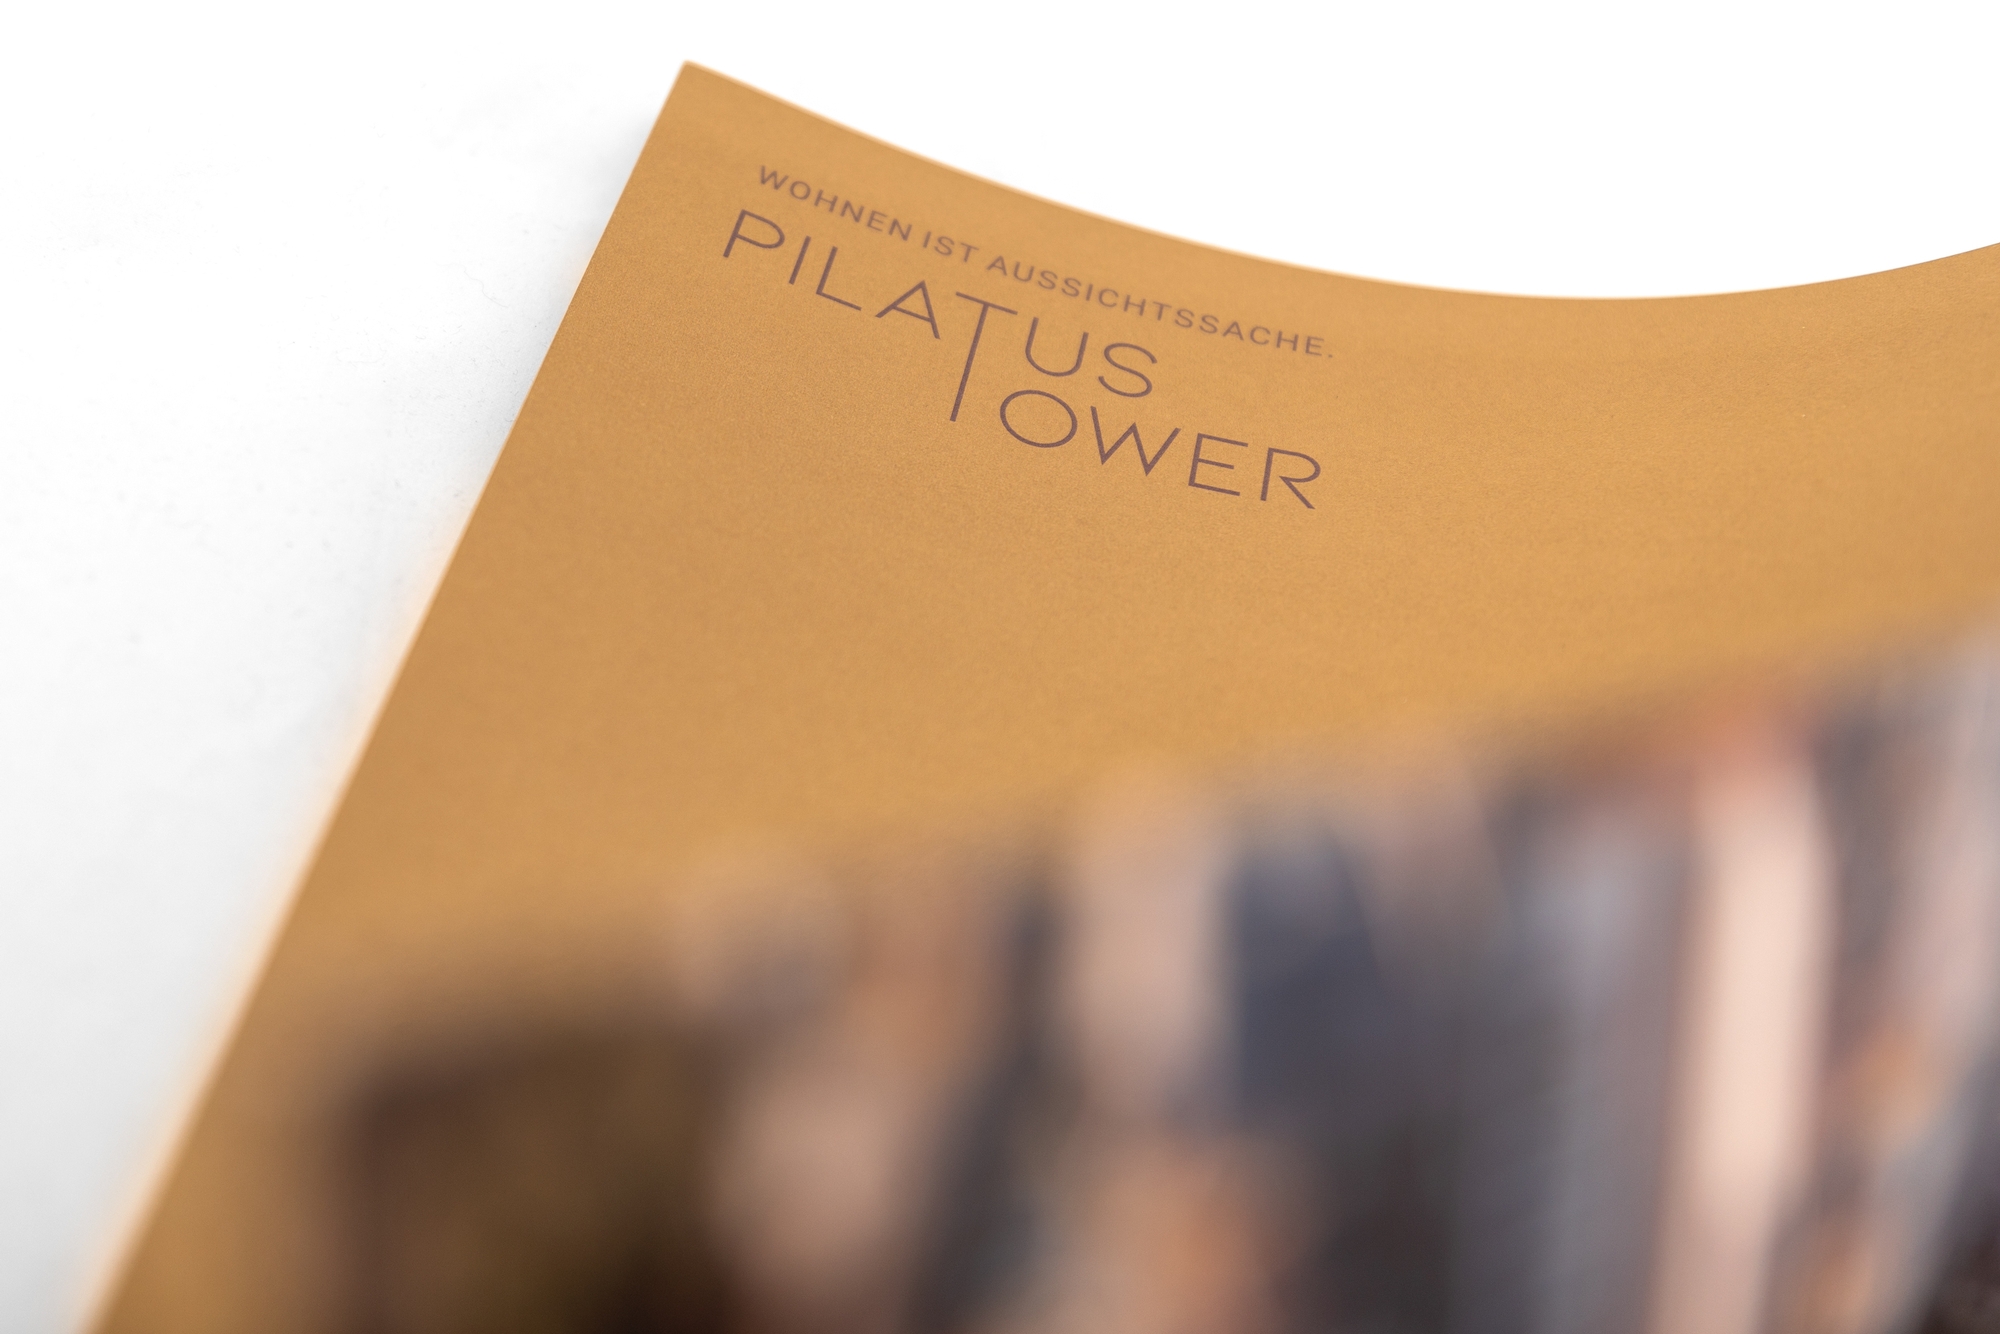 PilatusTower-6